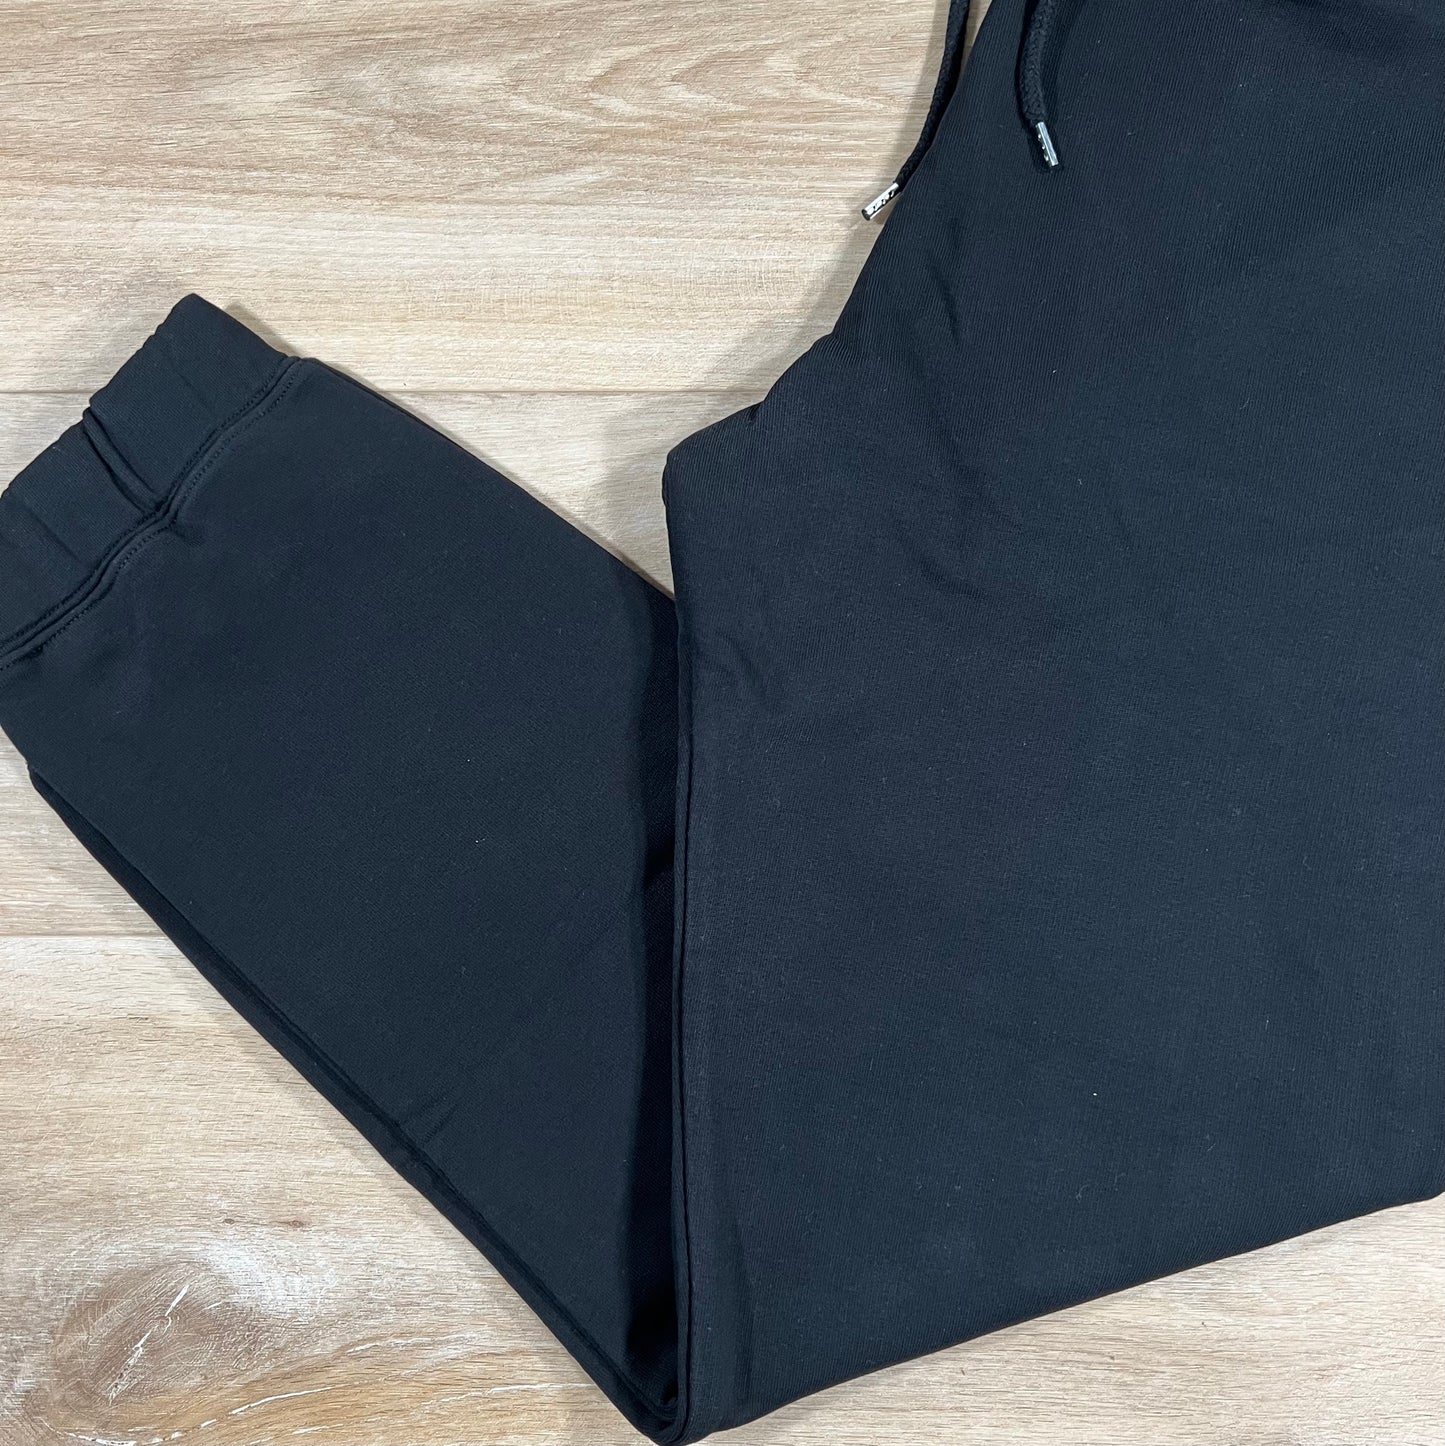 Vivienne Westwood Sweatpants in Black